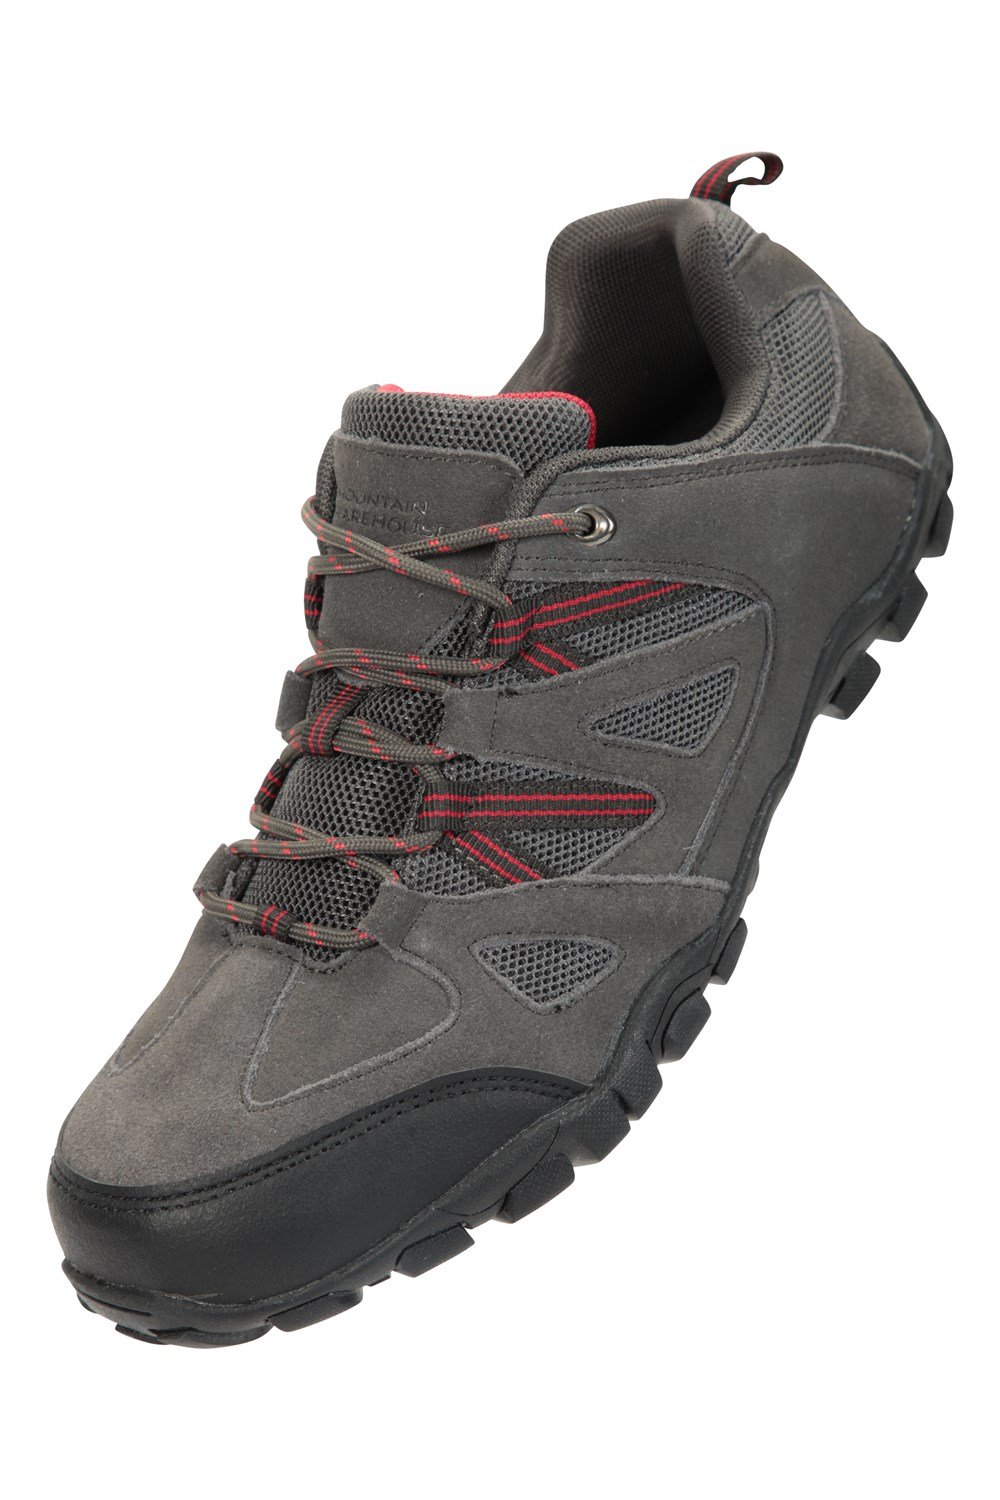 Mountain Warehouse Mens Outdoor III Walking Shoes Hiking Trainers Shoe ...